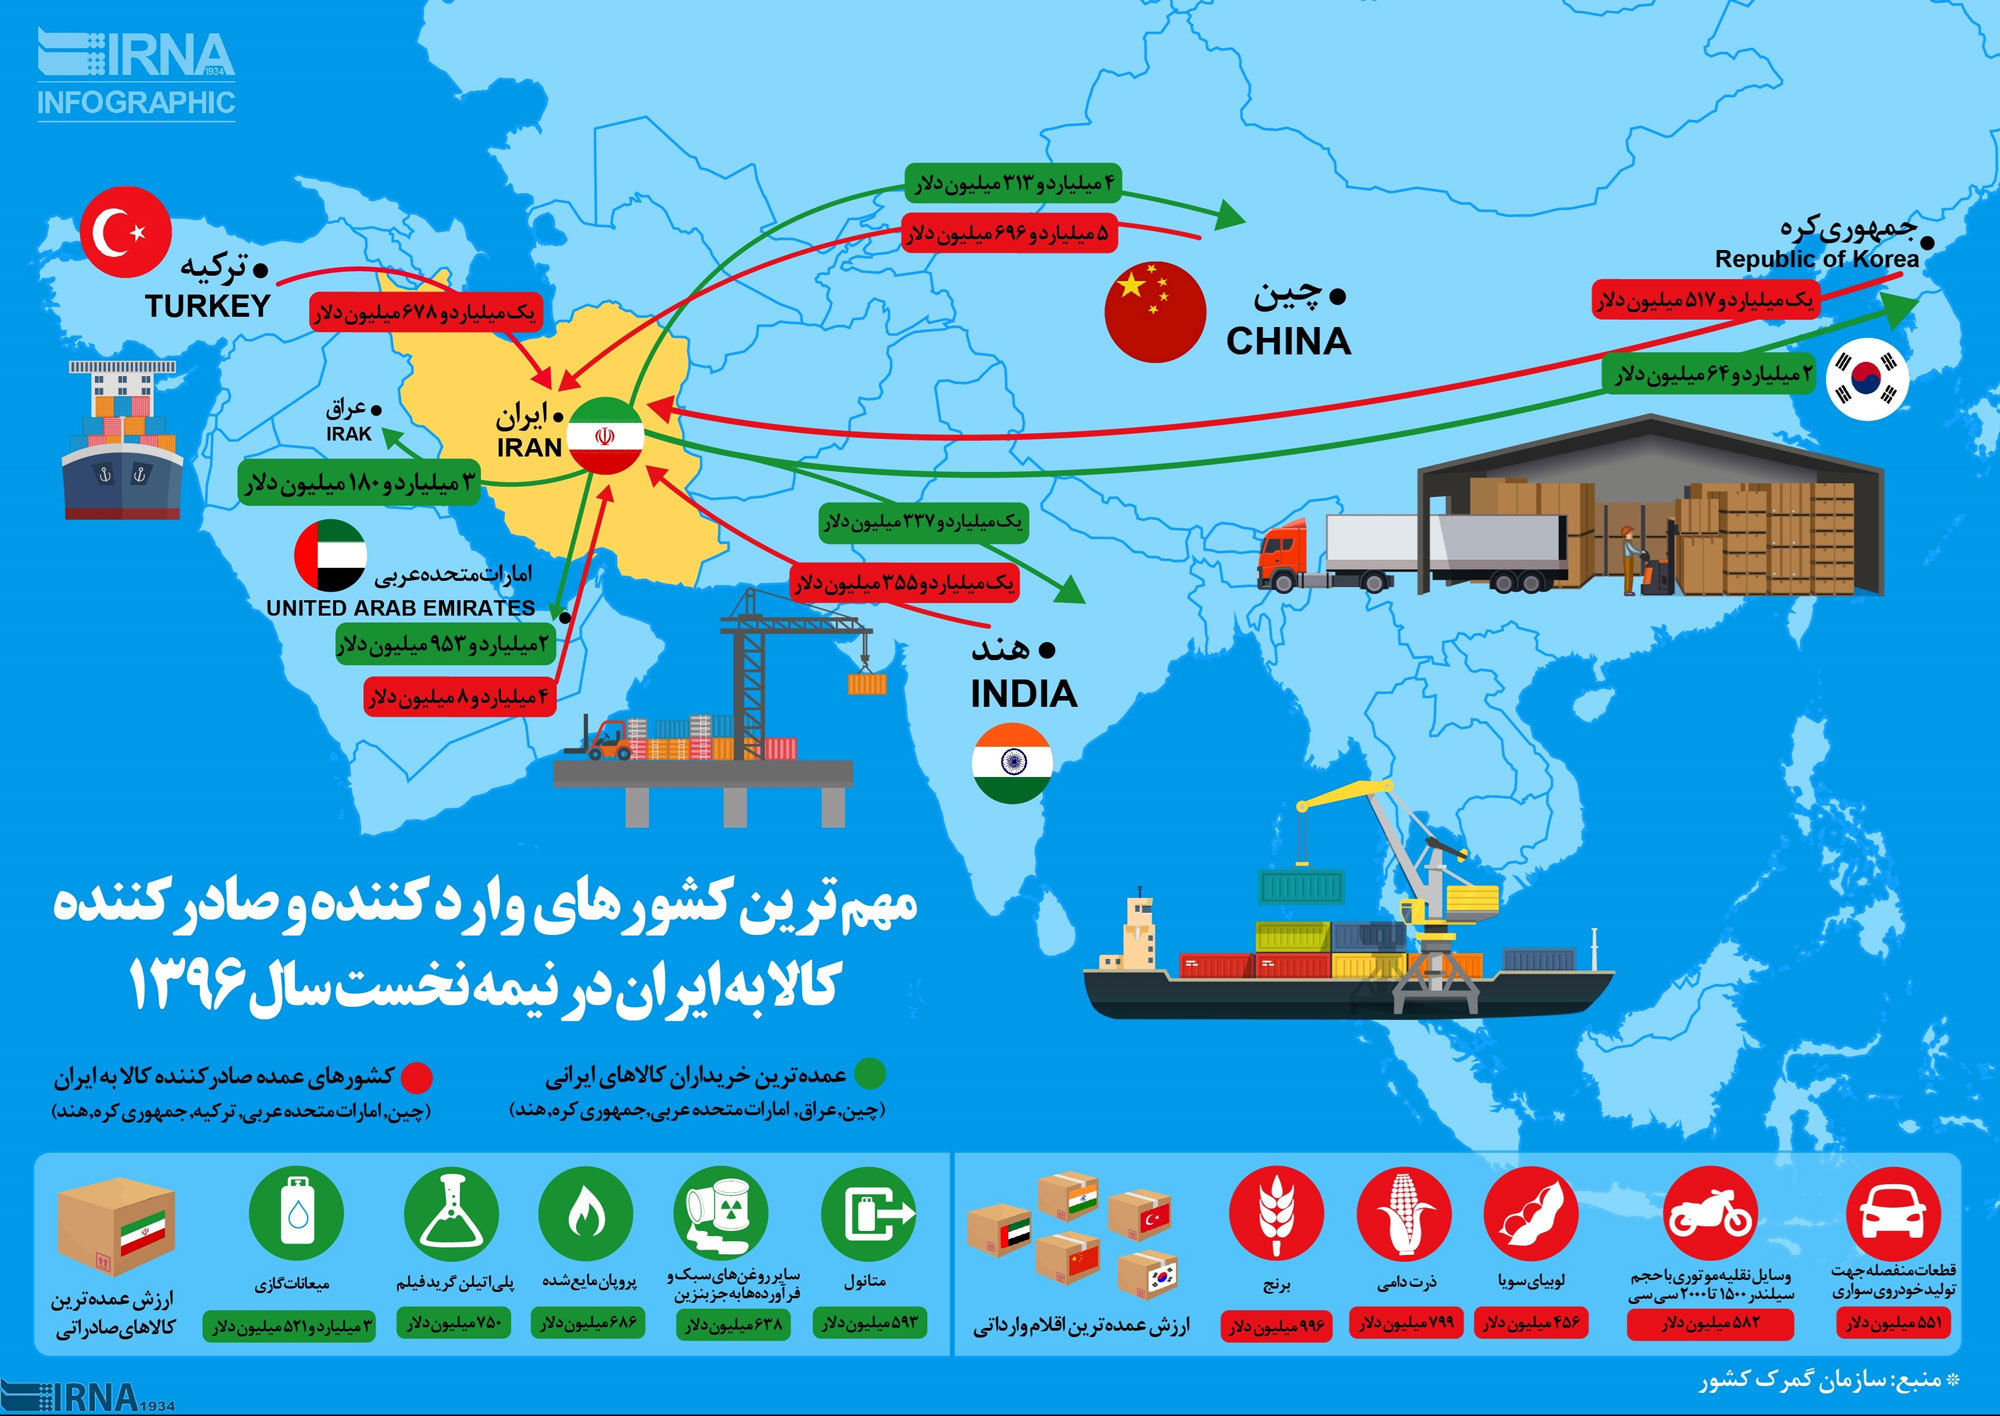 اینفوگرافی؛ کشورهای وارد و صادرکننده کالا به ایران